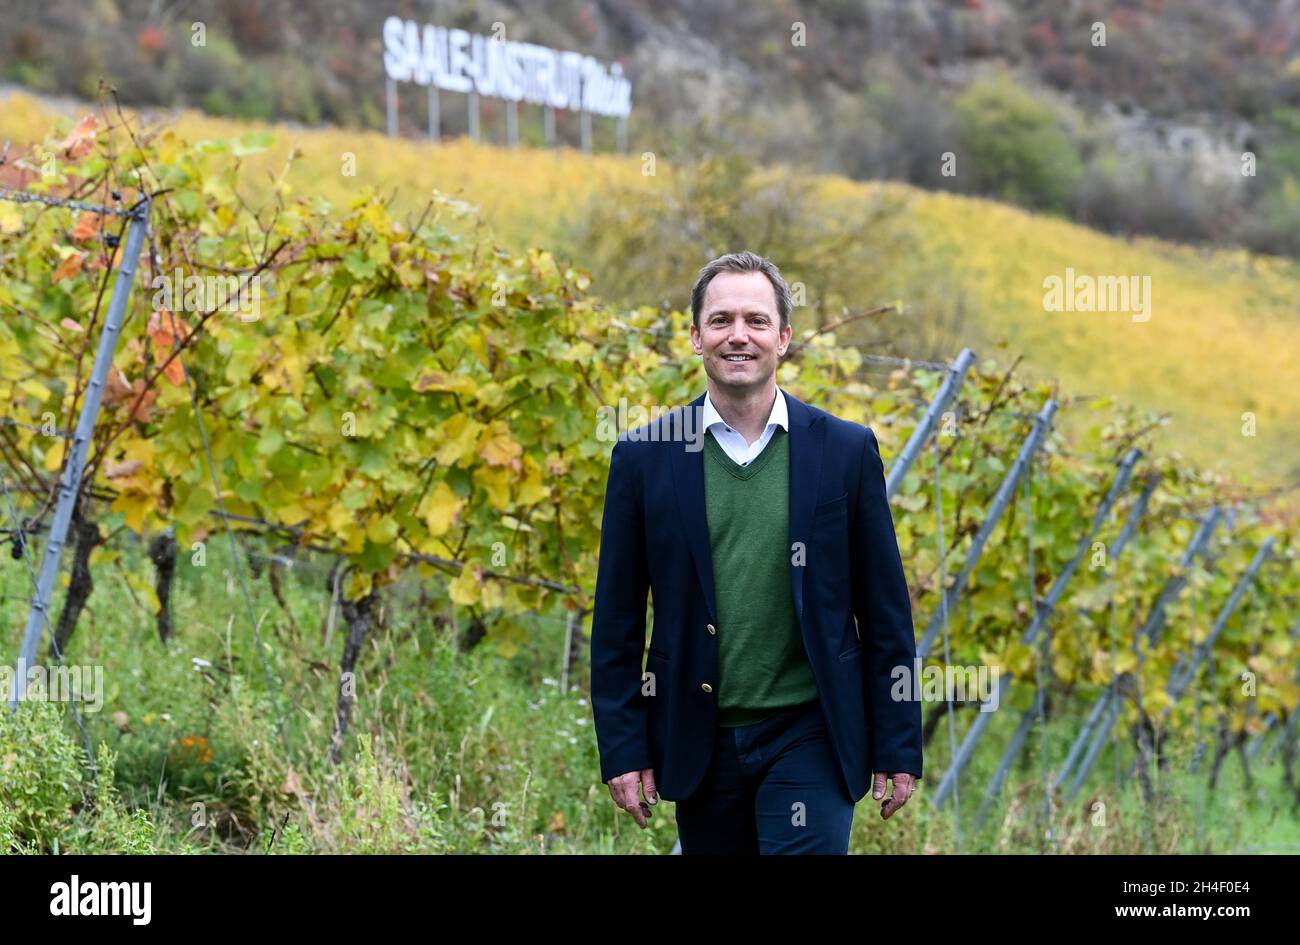 02 novembre 2021, Saxe-Anhalt, Bad Kösen: Philipp Kollmar, directeur général du domaine viticole de Kloster Pforta, est debout dans les feuilles des vignes de couleur automnale du vignoble de Bad Kösen.L'homme de 49 ans du Bade-Wurtemberg gère officiellement le domaine viticole depuis lundi (01.11.2021).Kollmar a répondu à un appel d'offres de la Landgesellschaft Sachsen-Anhalt et a reçu le contrat.Photo: Hendrik Schmidt/dpa-Zentralbild/ZB Banque D'Images